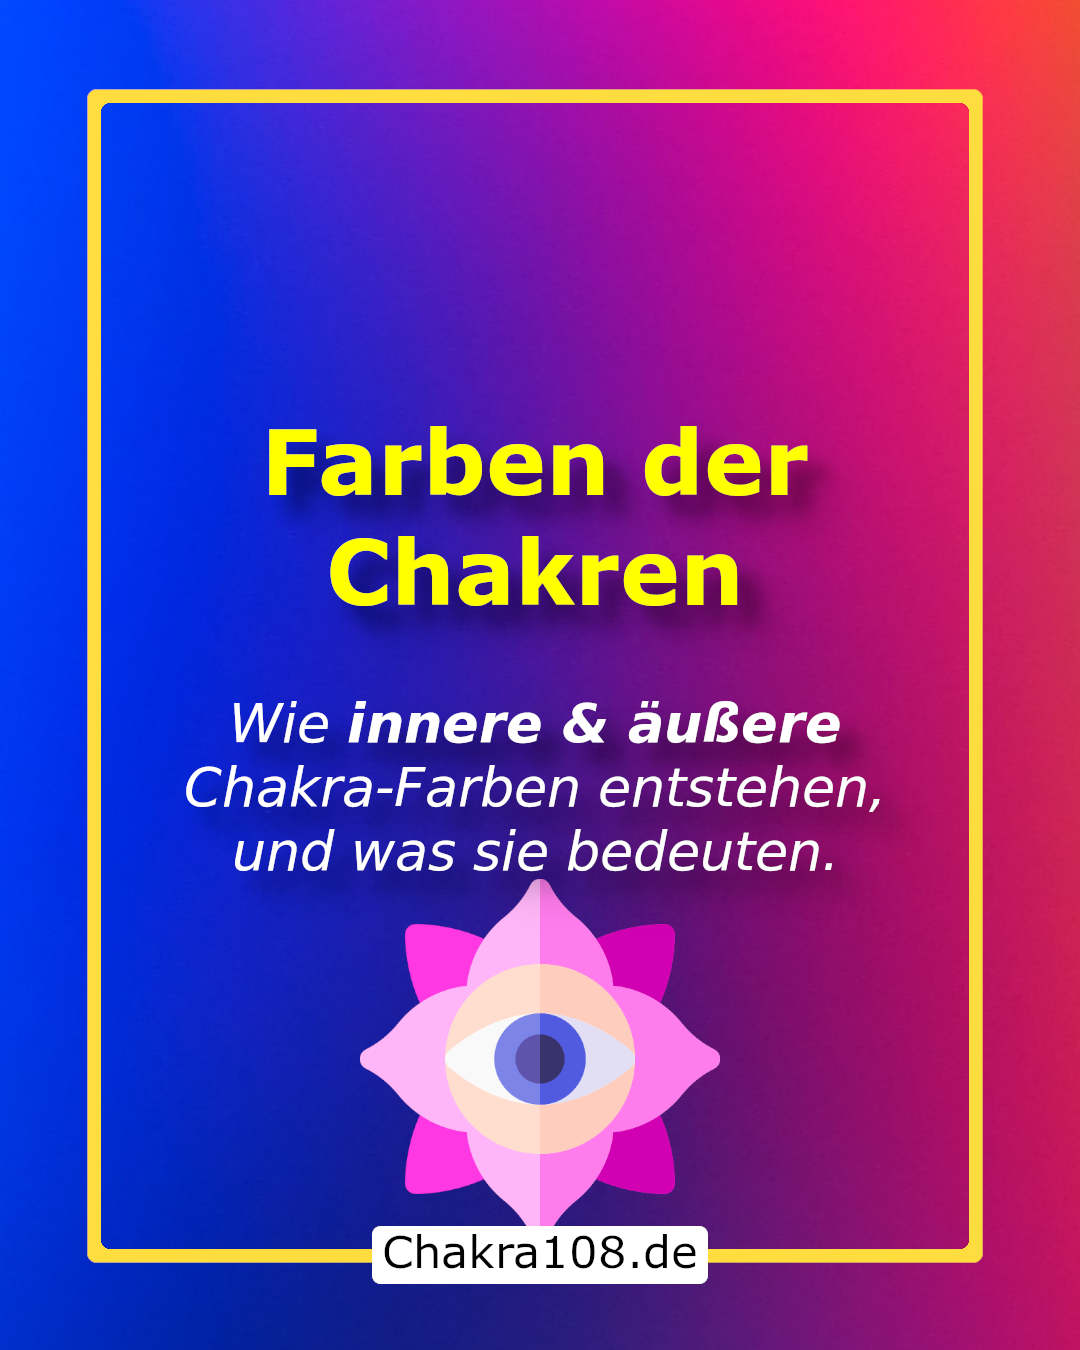 Farben der Chakren: Wie innere und äussere Chakra-Farben entstehen und was sie bedeuten.